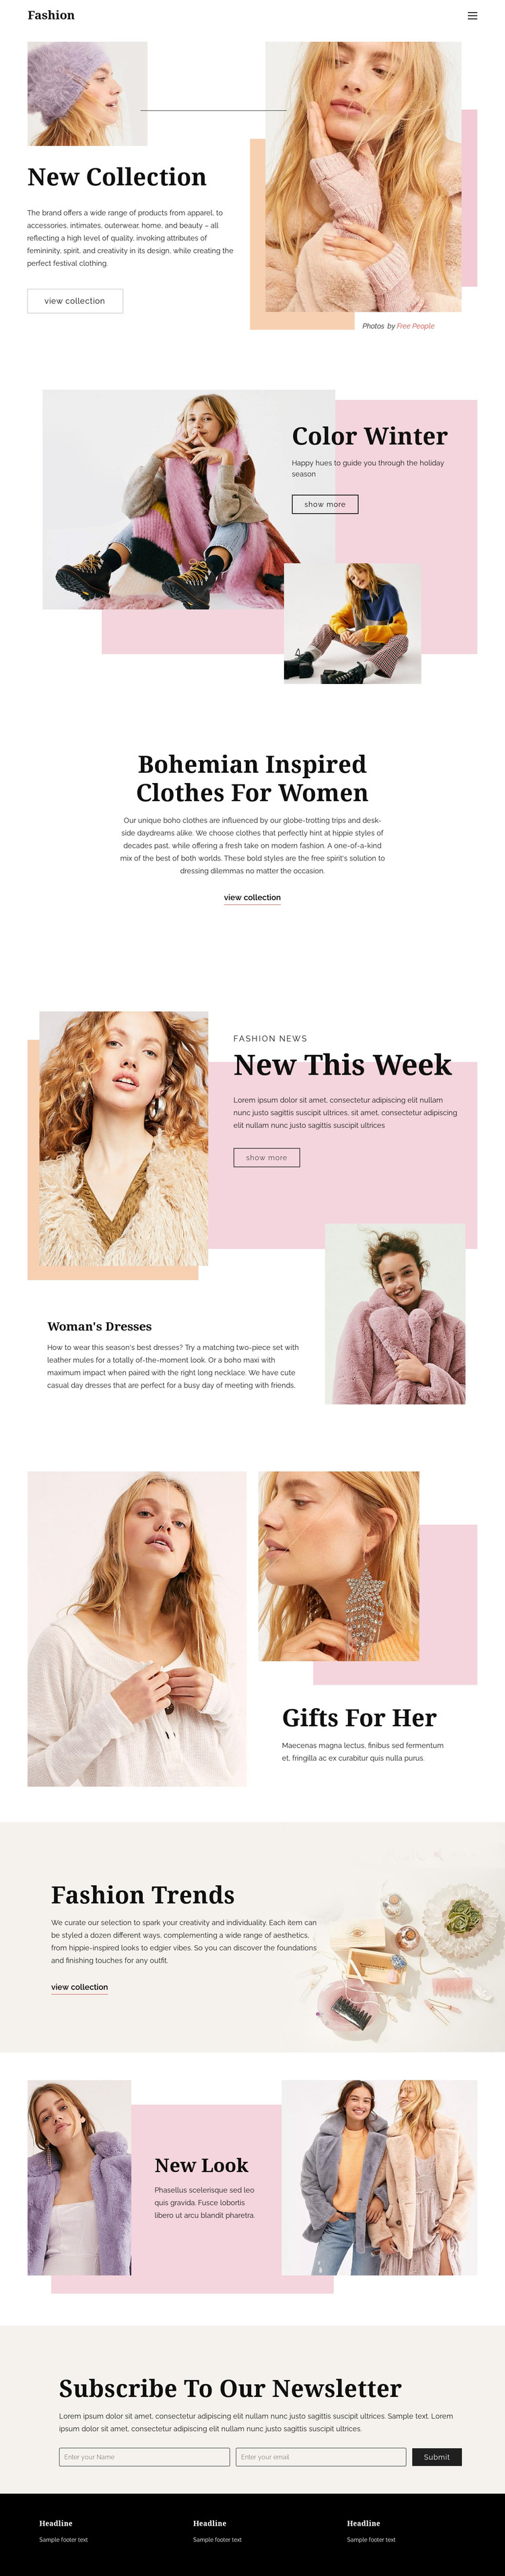 Fashion Page Design WordPress Theme